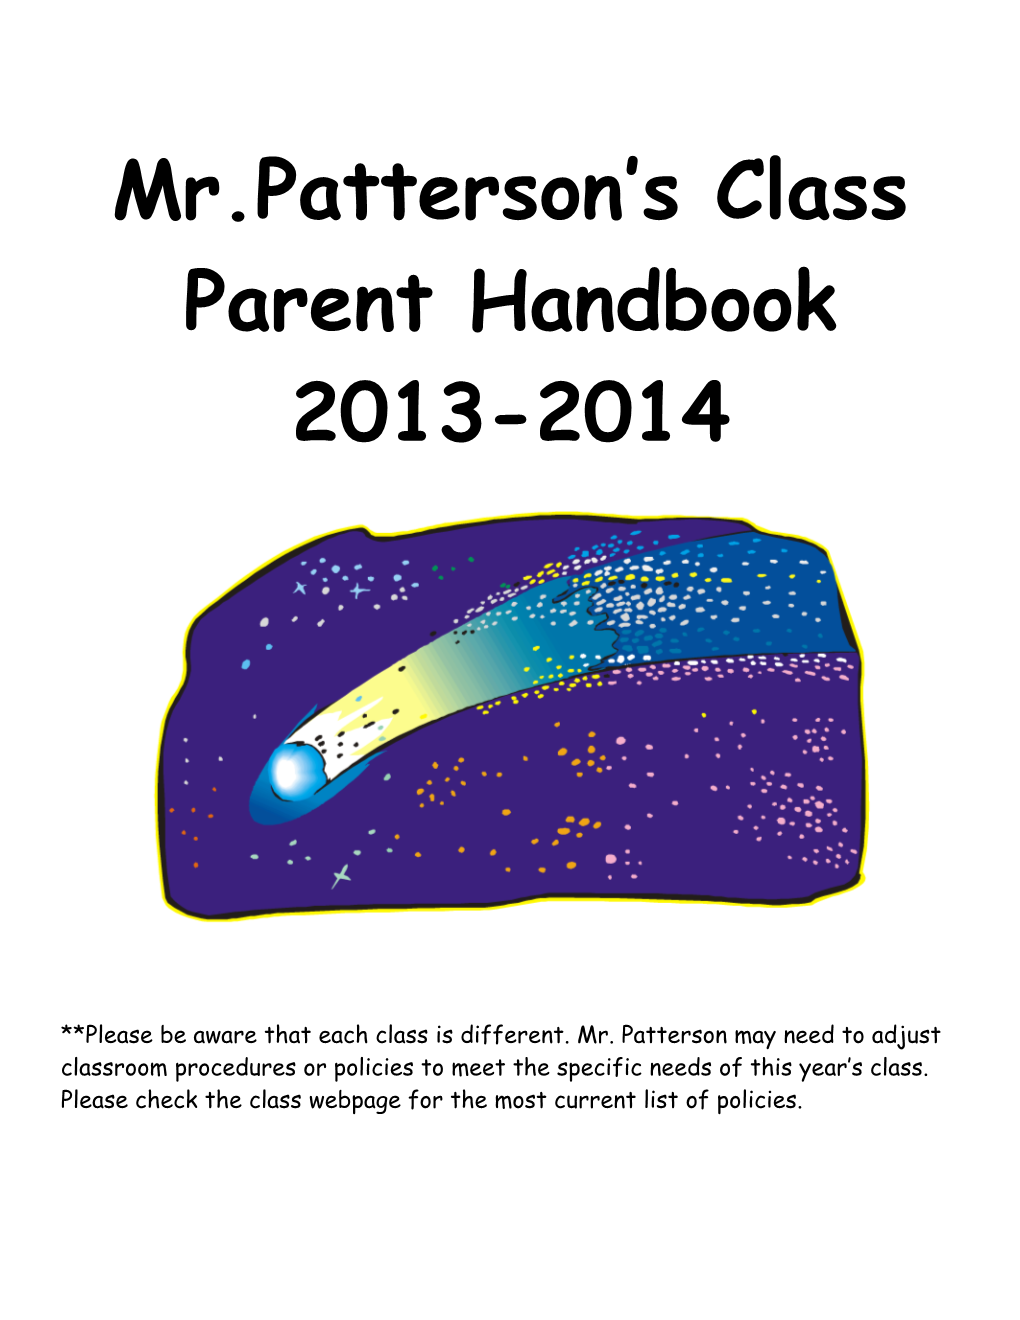 Mr. Patterson S Class Handbook